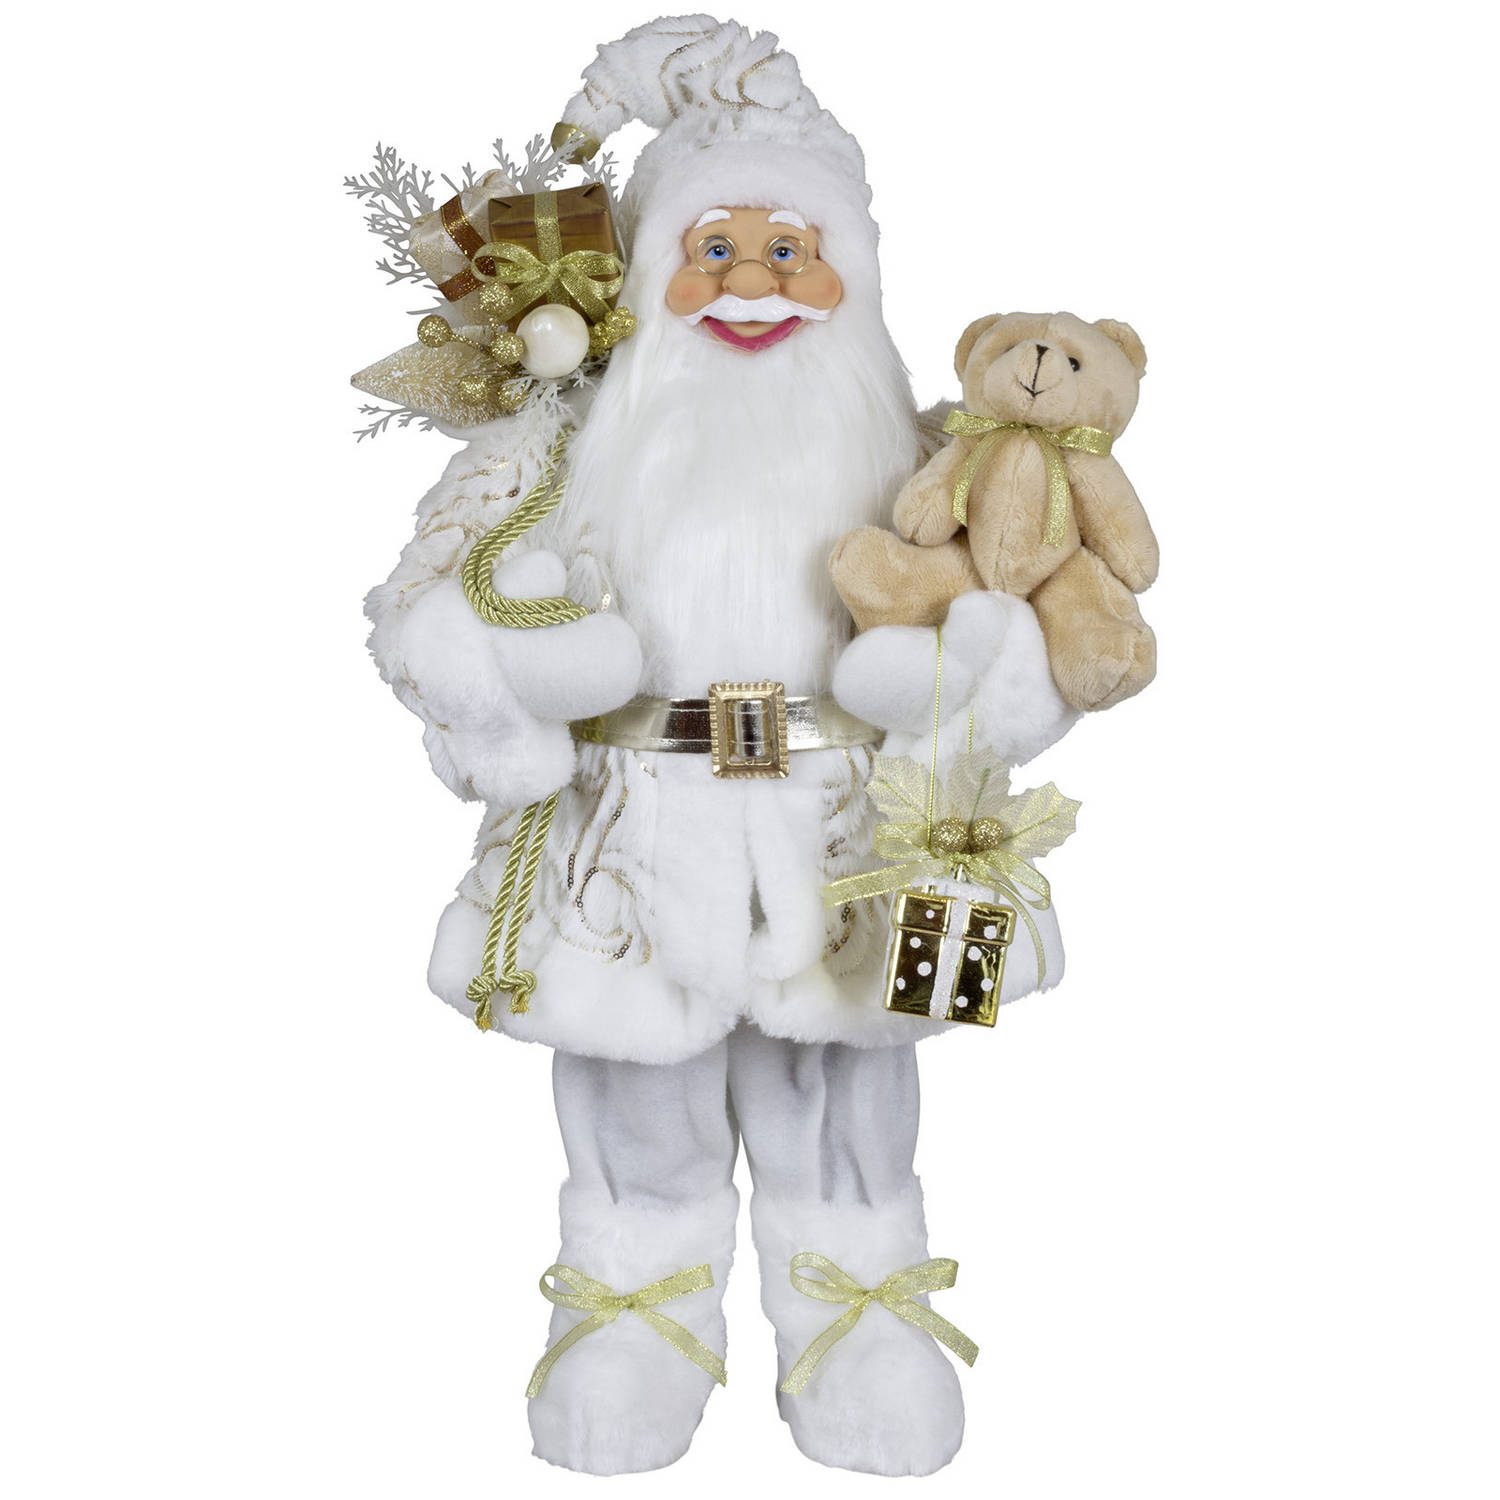 Kerstman decoratie pop Victor - H60 cm - wit - staand - kerst beeld - kerst figuur